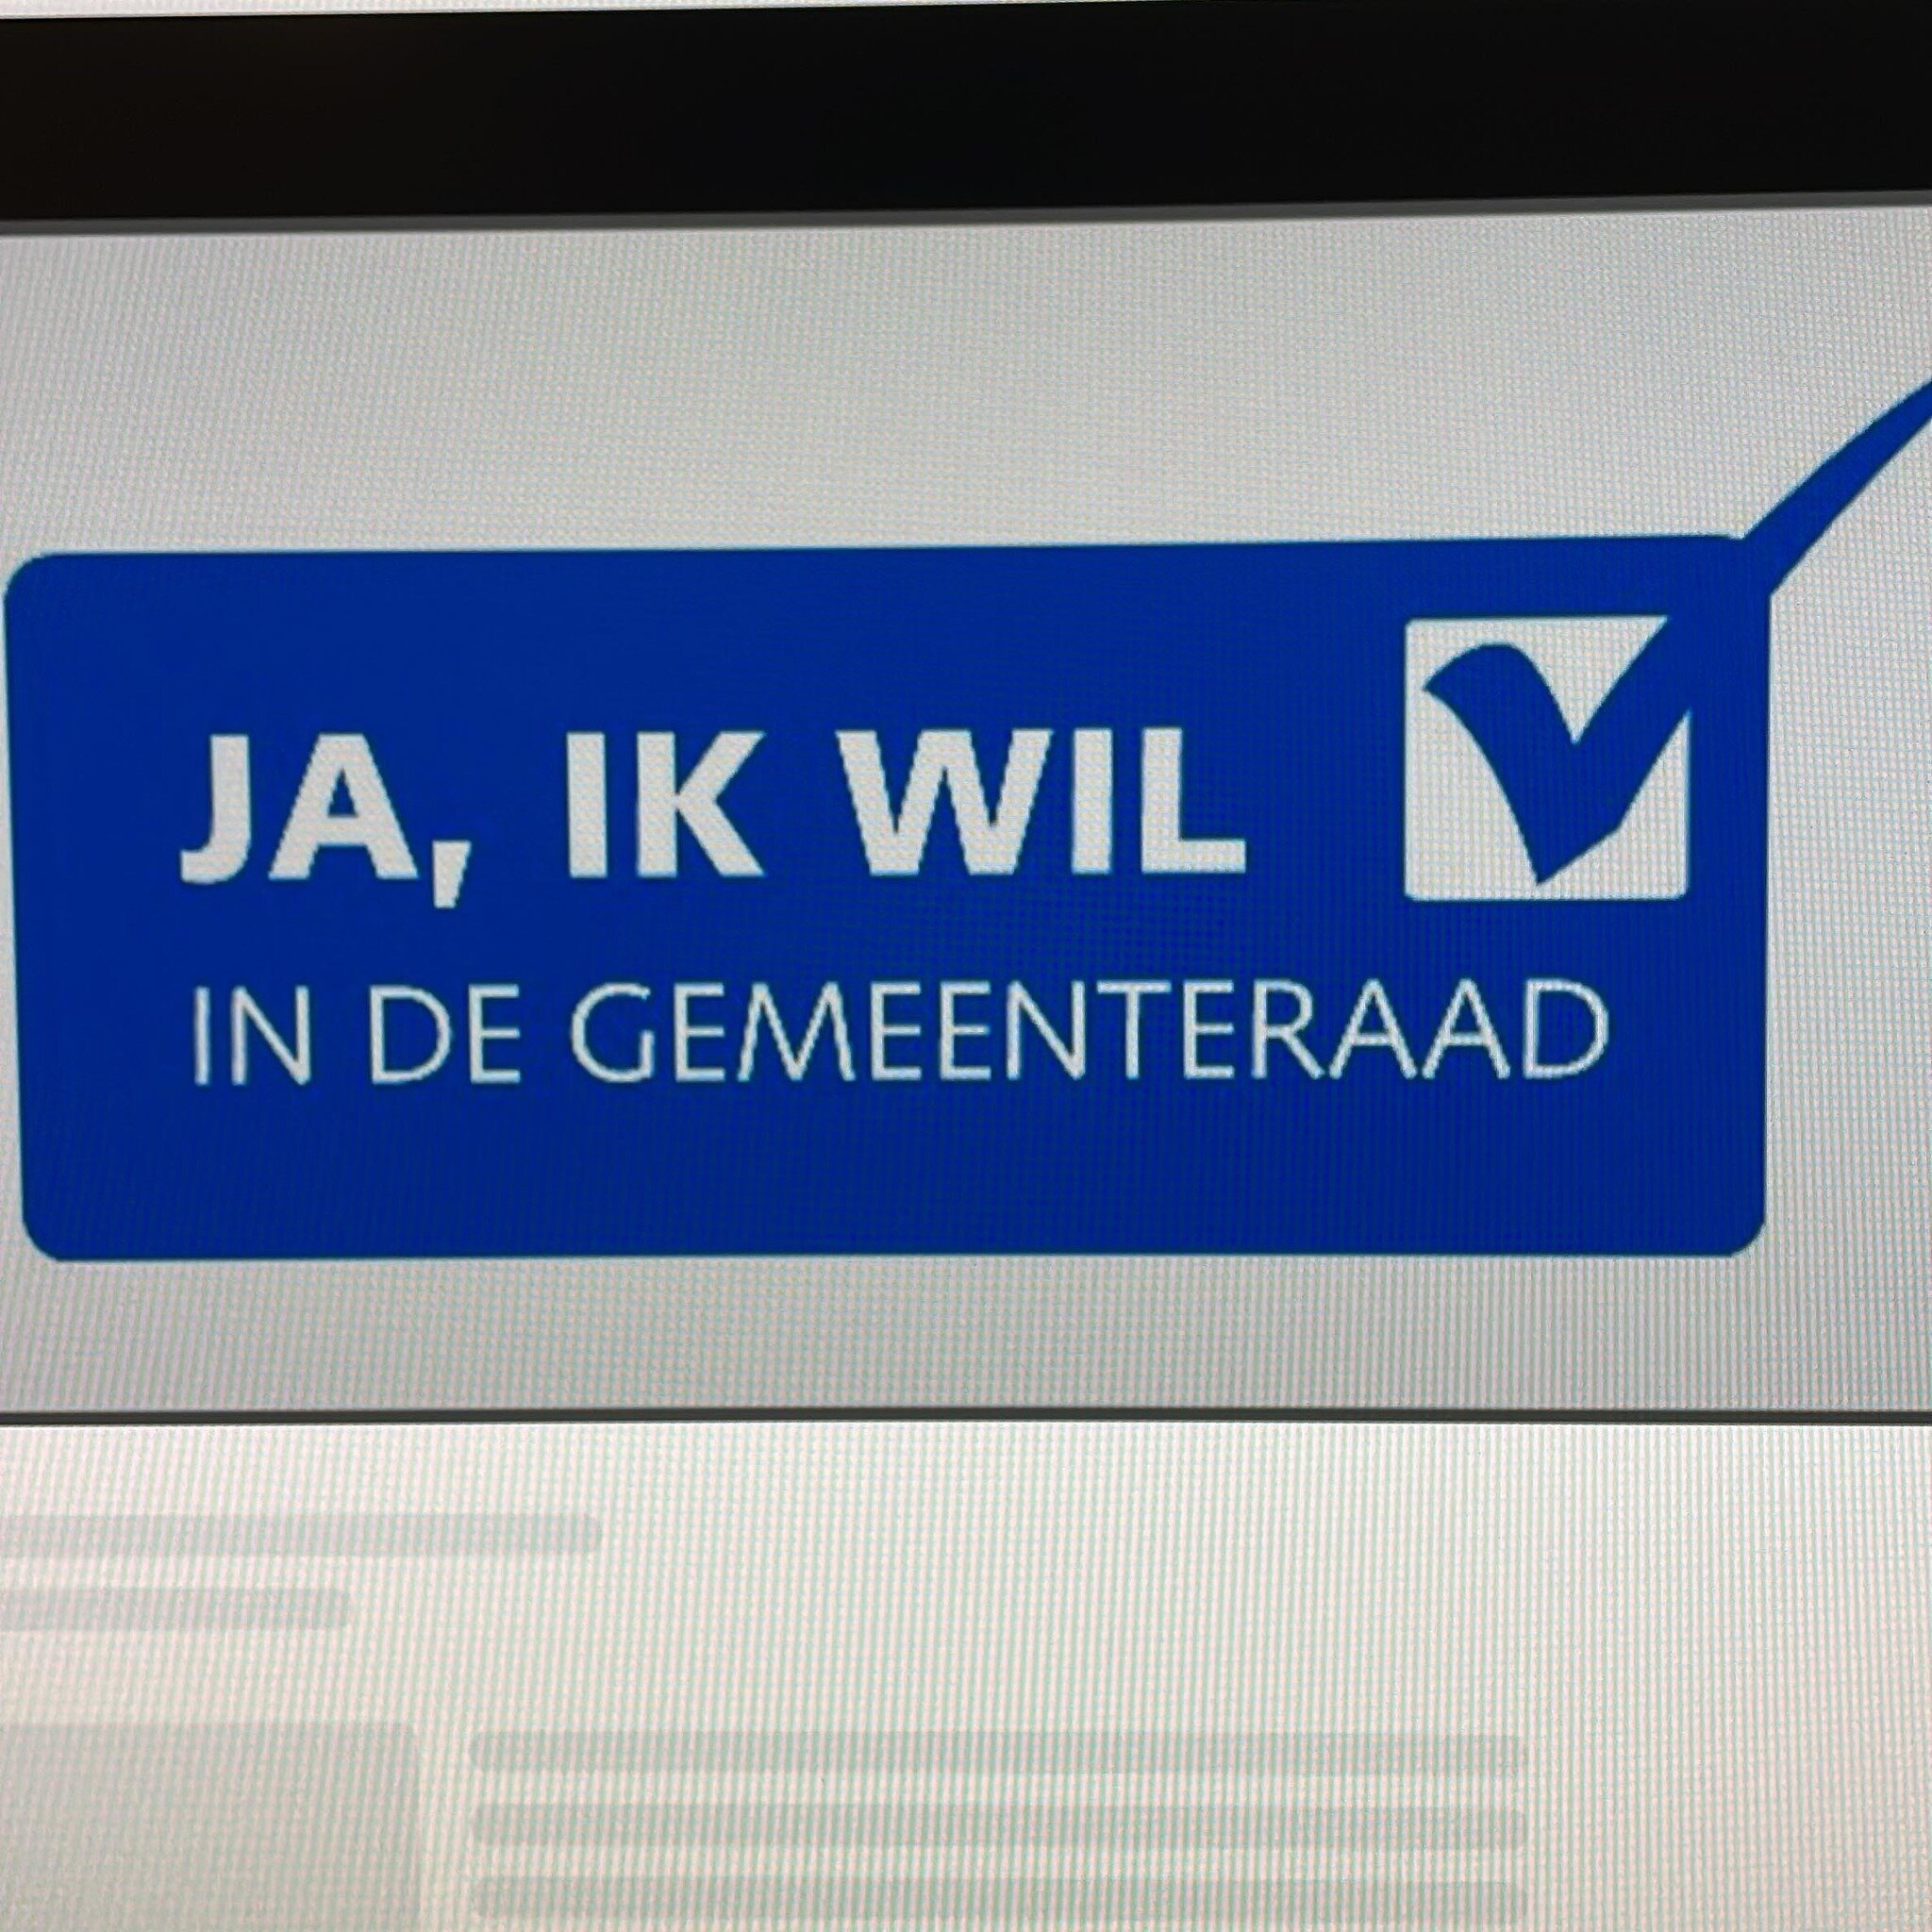 Wie is Job de Jong eigenlijk?

http://tinyurl.com/2be8pb75